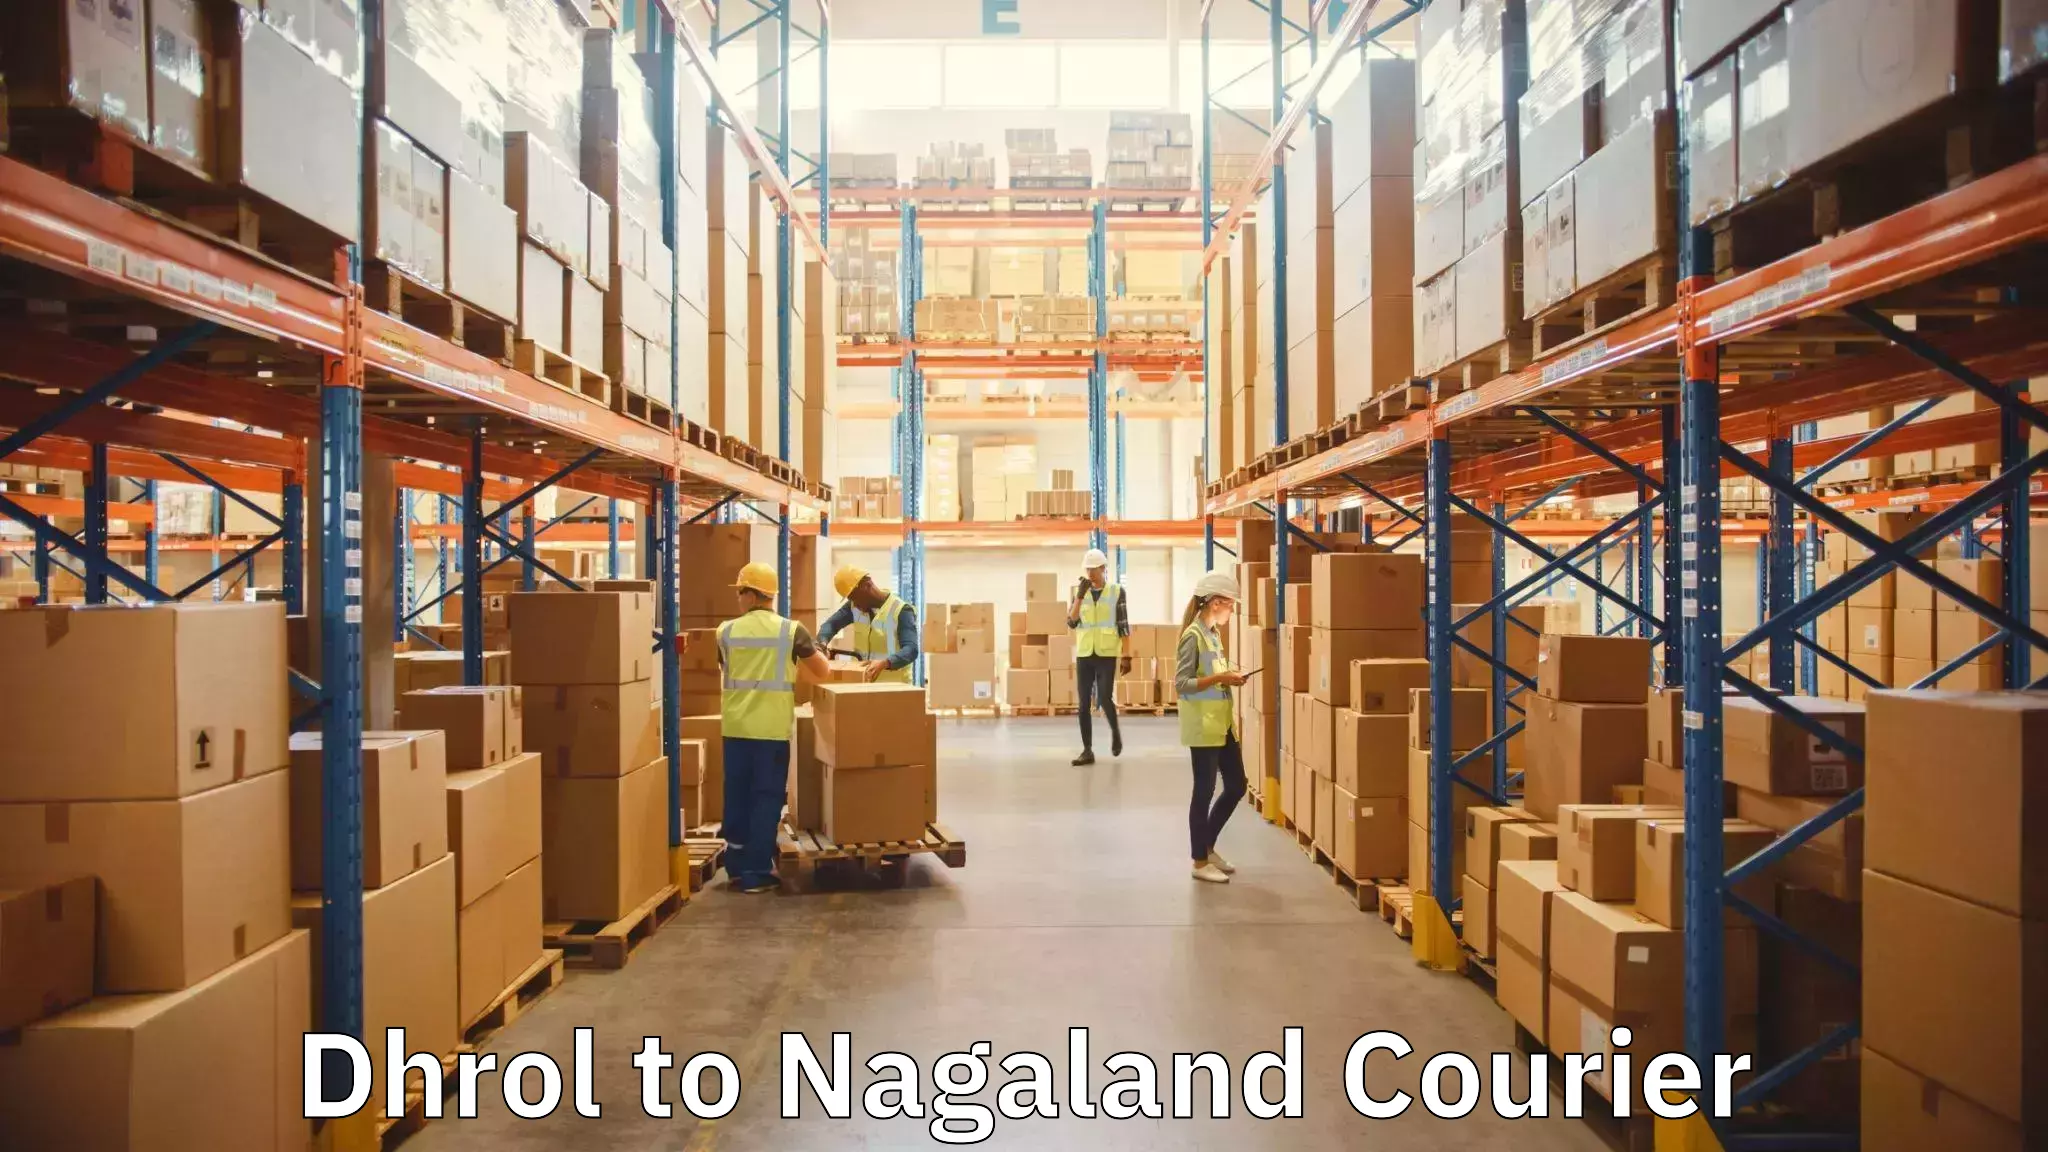 Furniture moving plans Dhrol to Nagaland